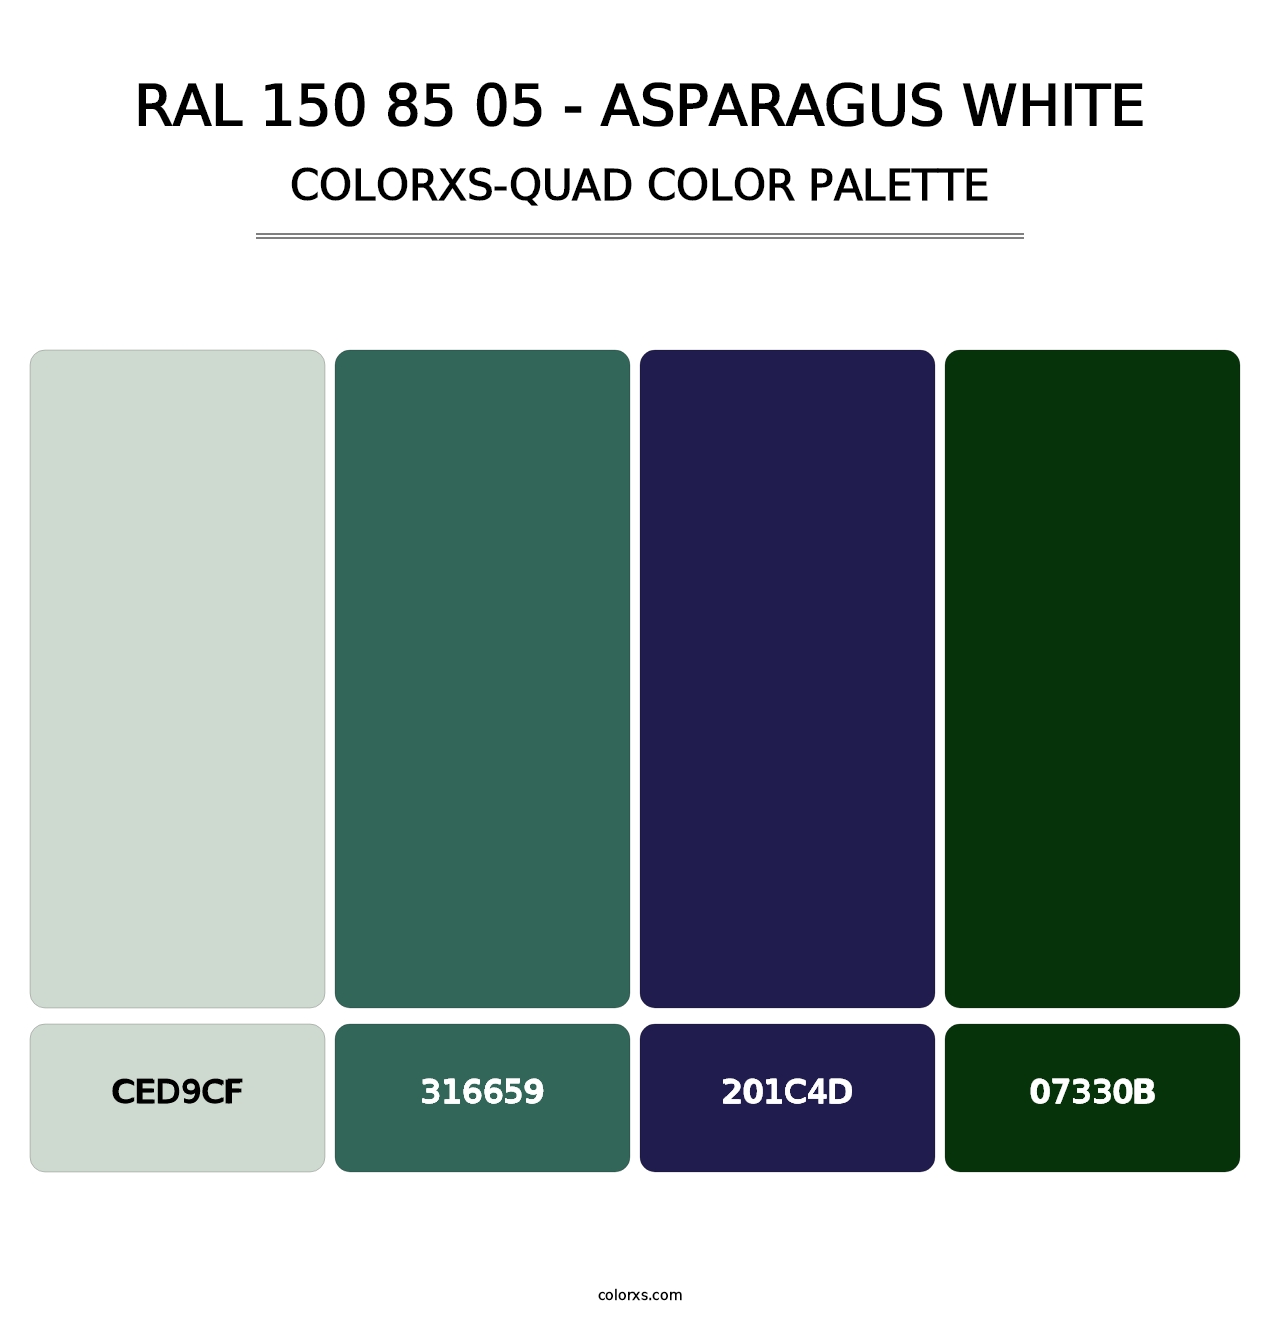 RAL 150 85 05 - Asparagus White - Colorxs Quad Palette